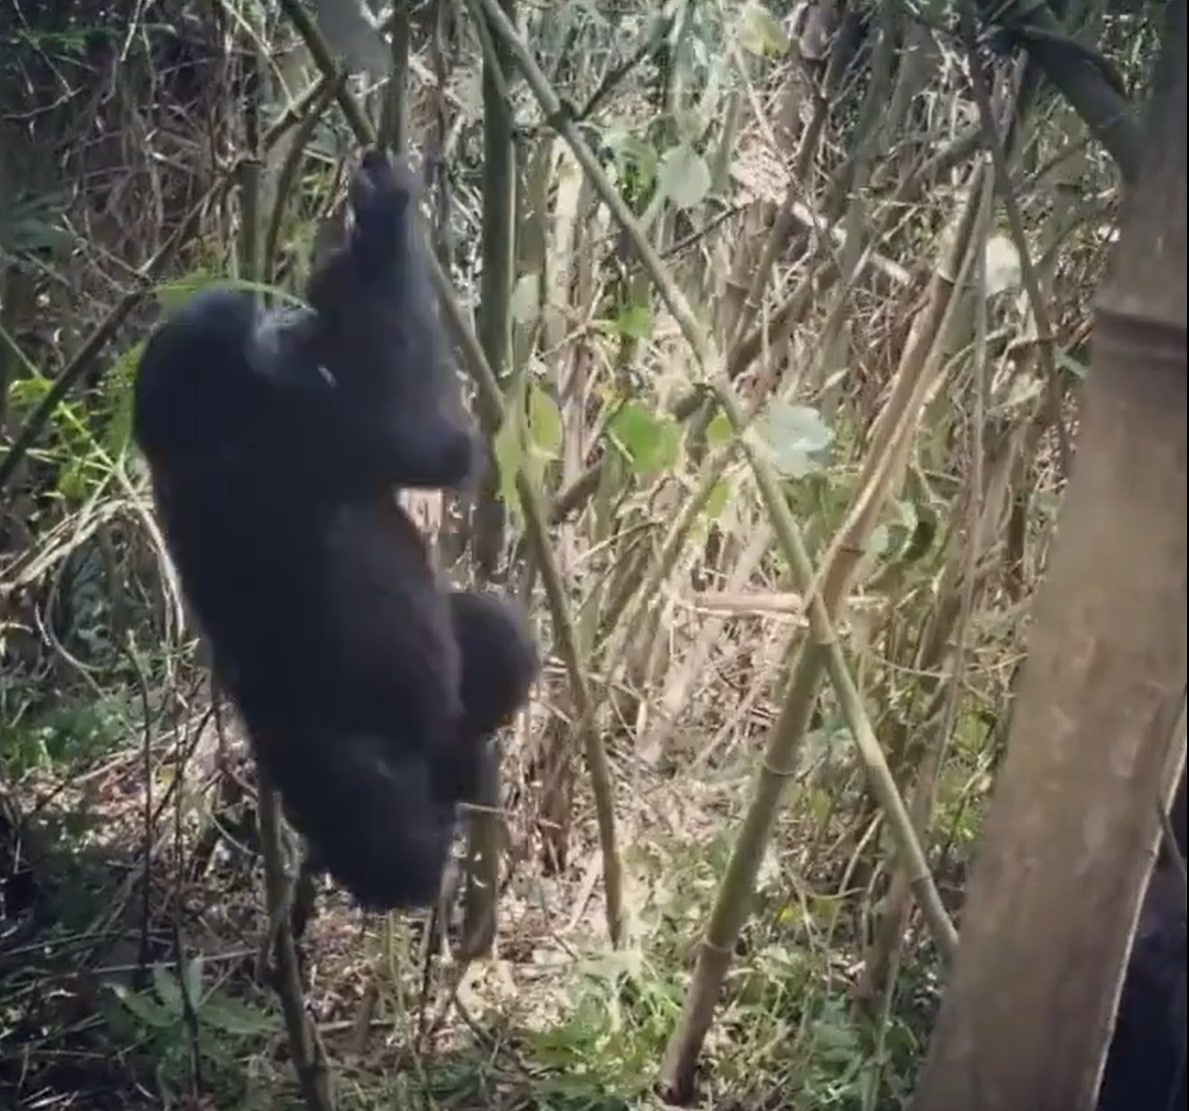 Gorilla spinning